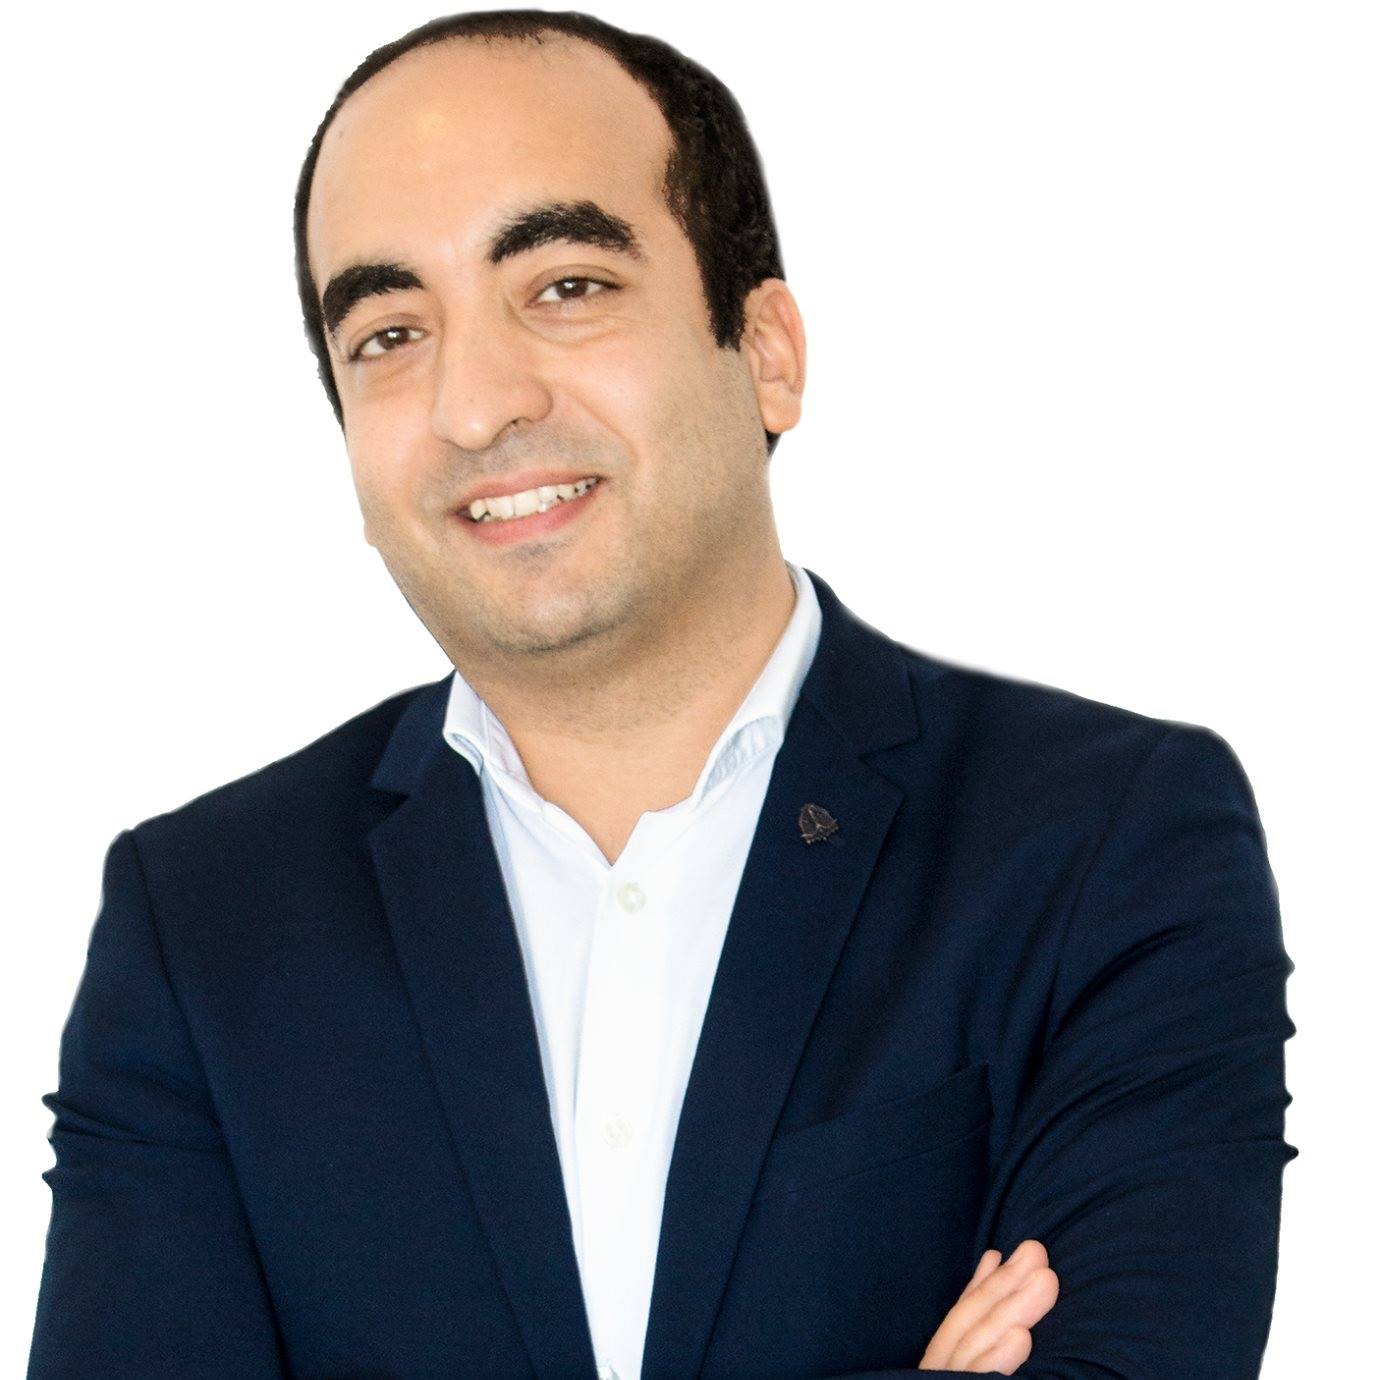 A conversation with Karim Jouini, Founder and CEO of Expensya.com